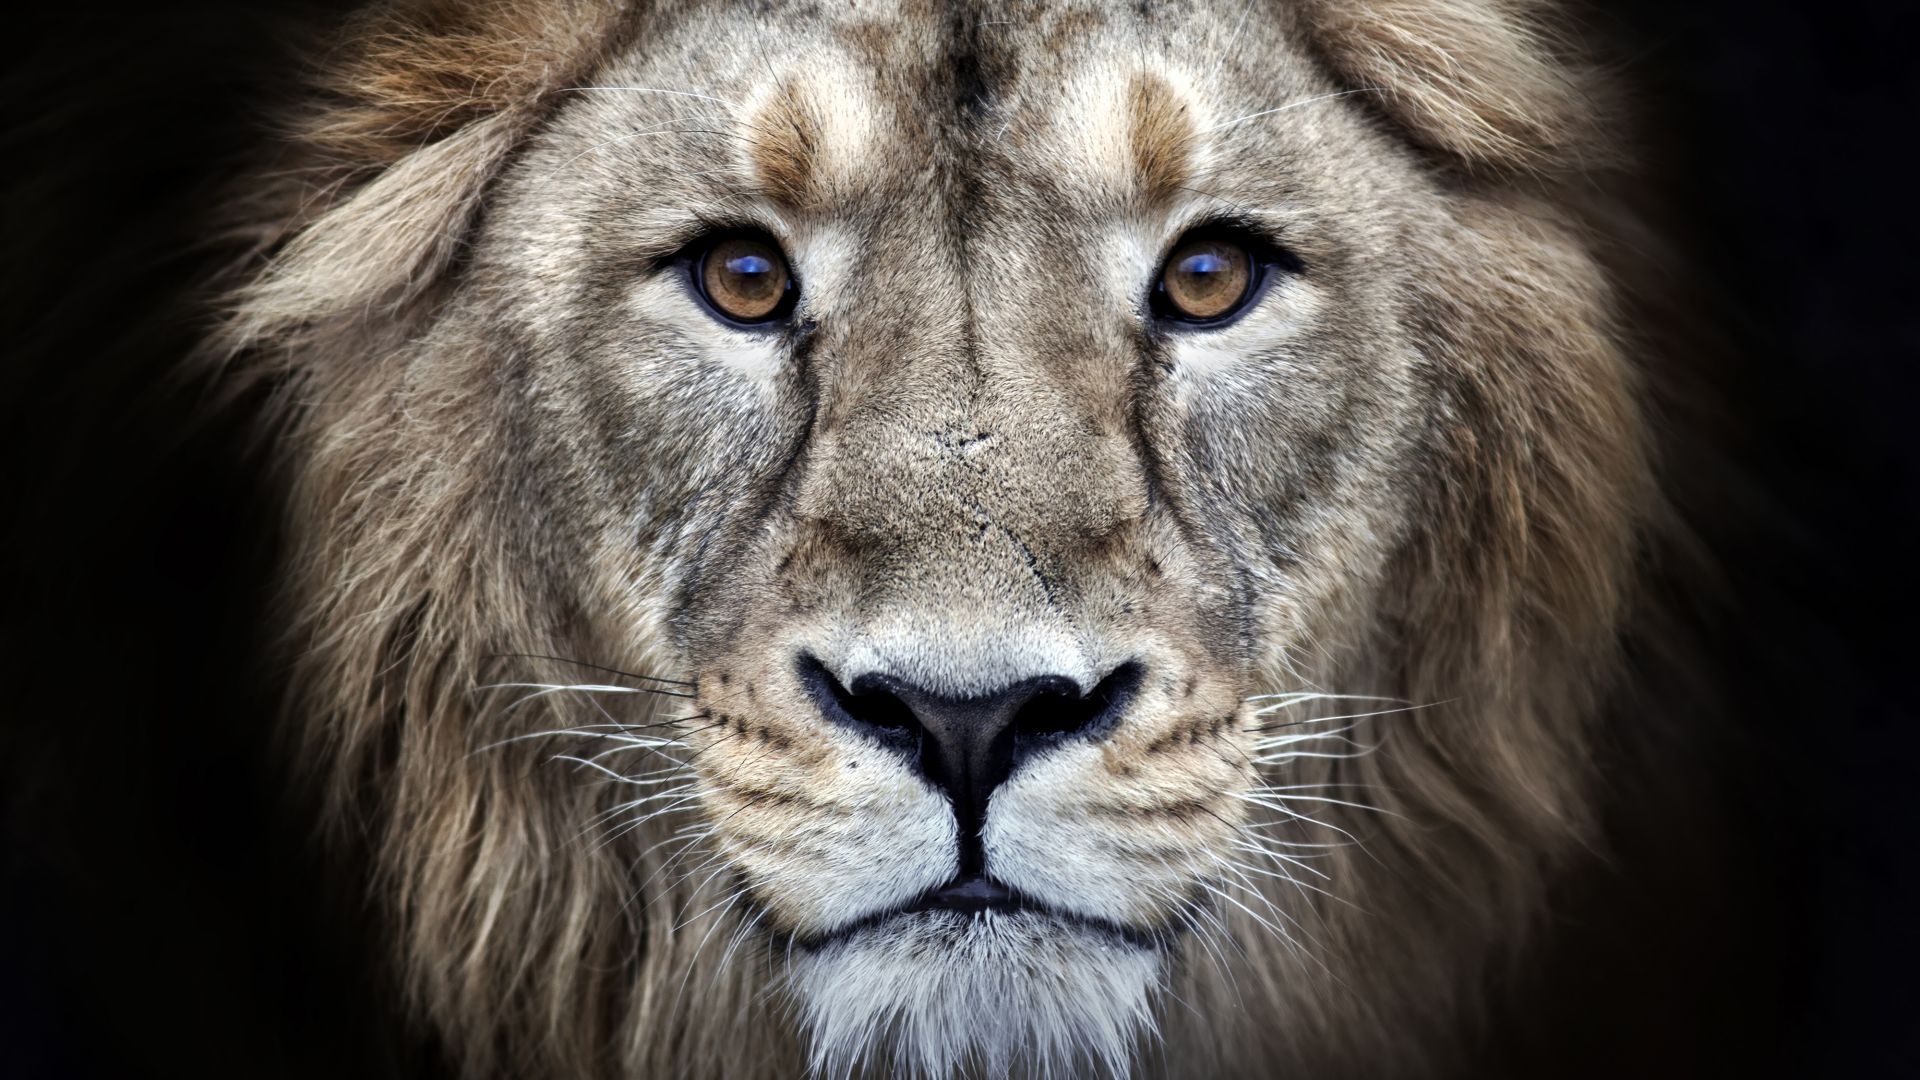 Lion Photo - Lion Face - HD Background